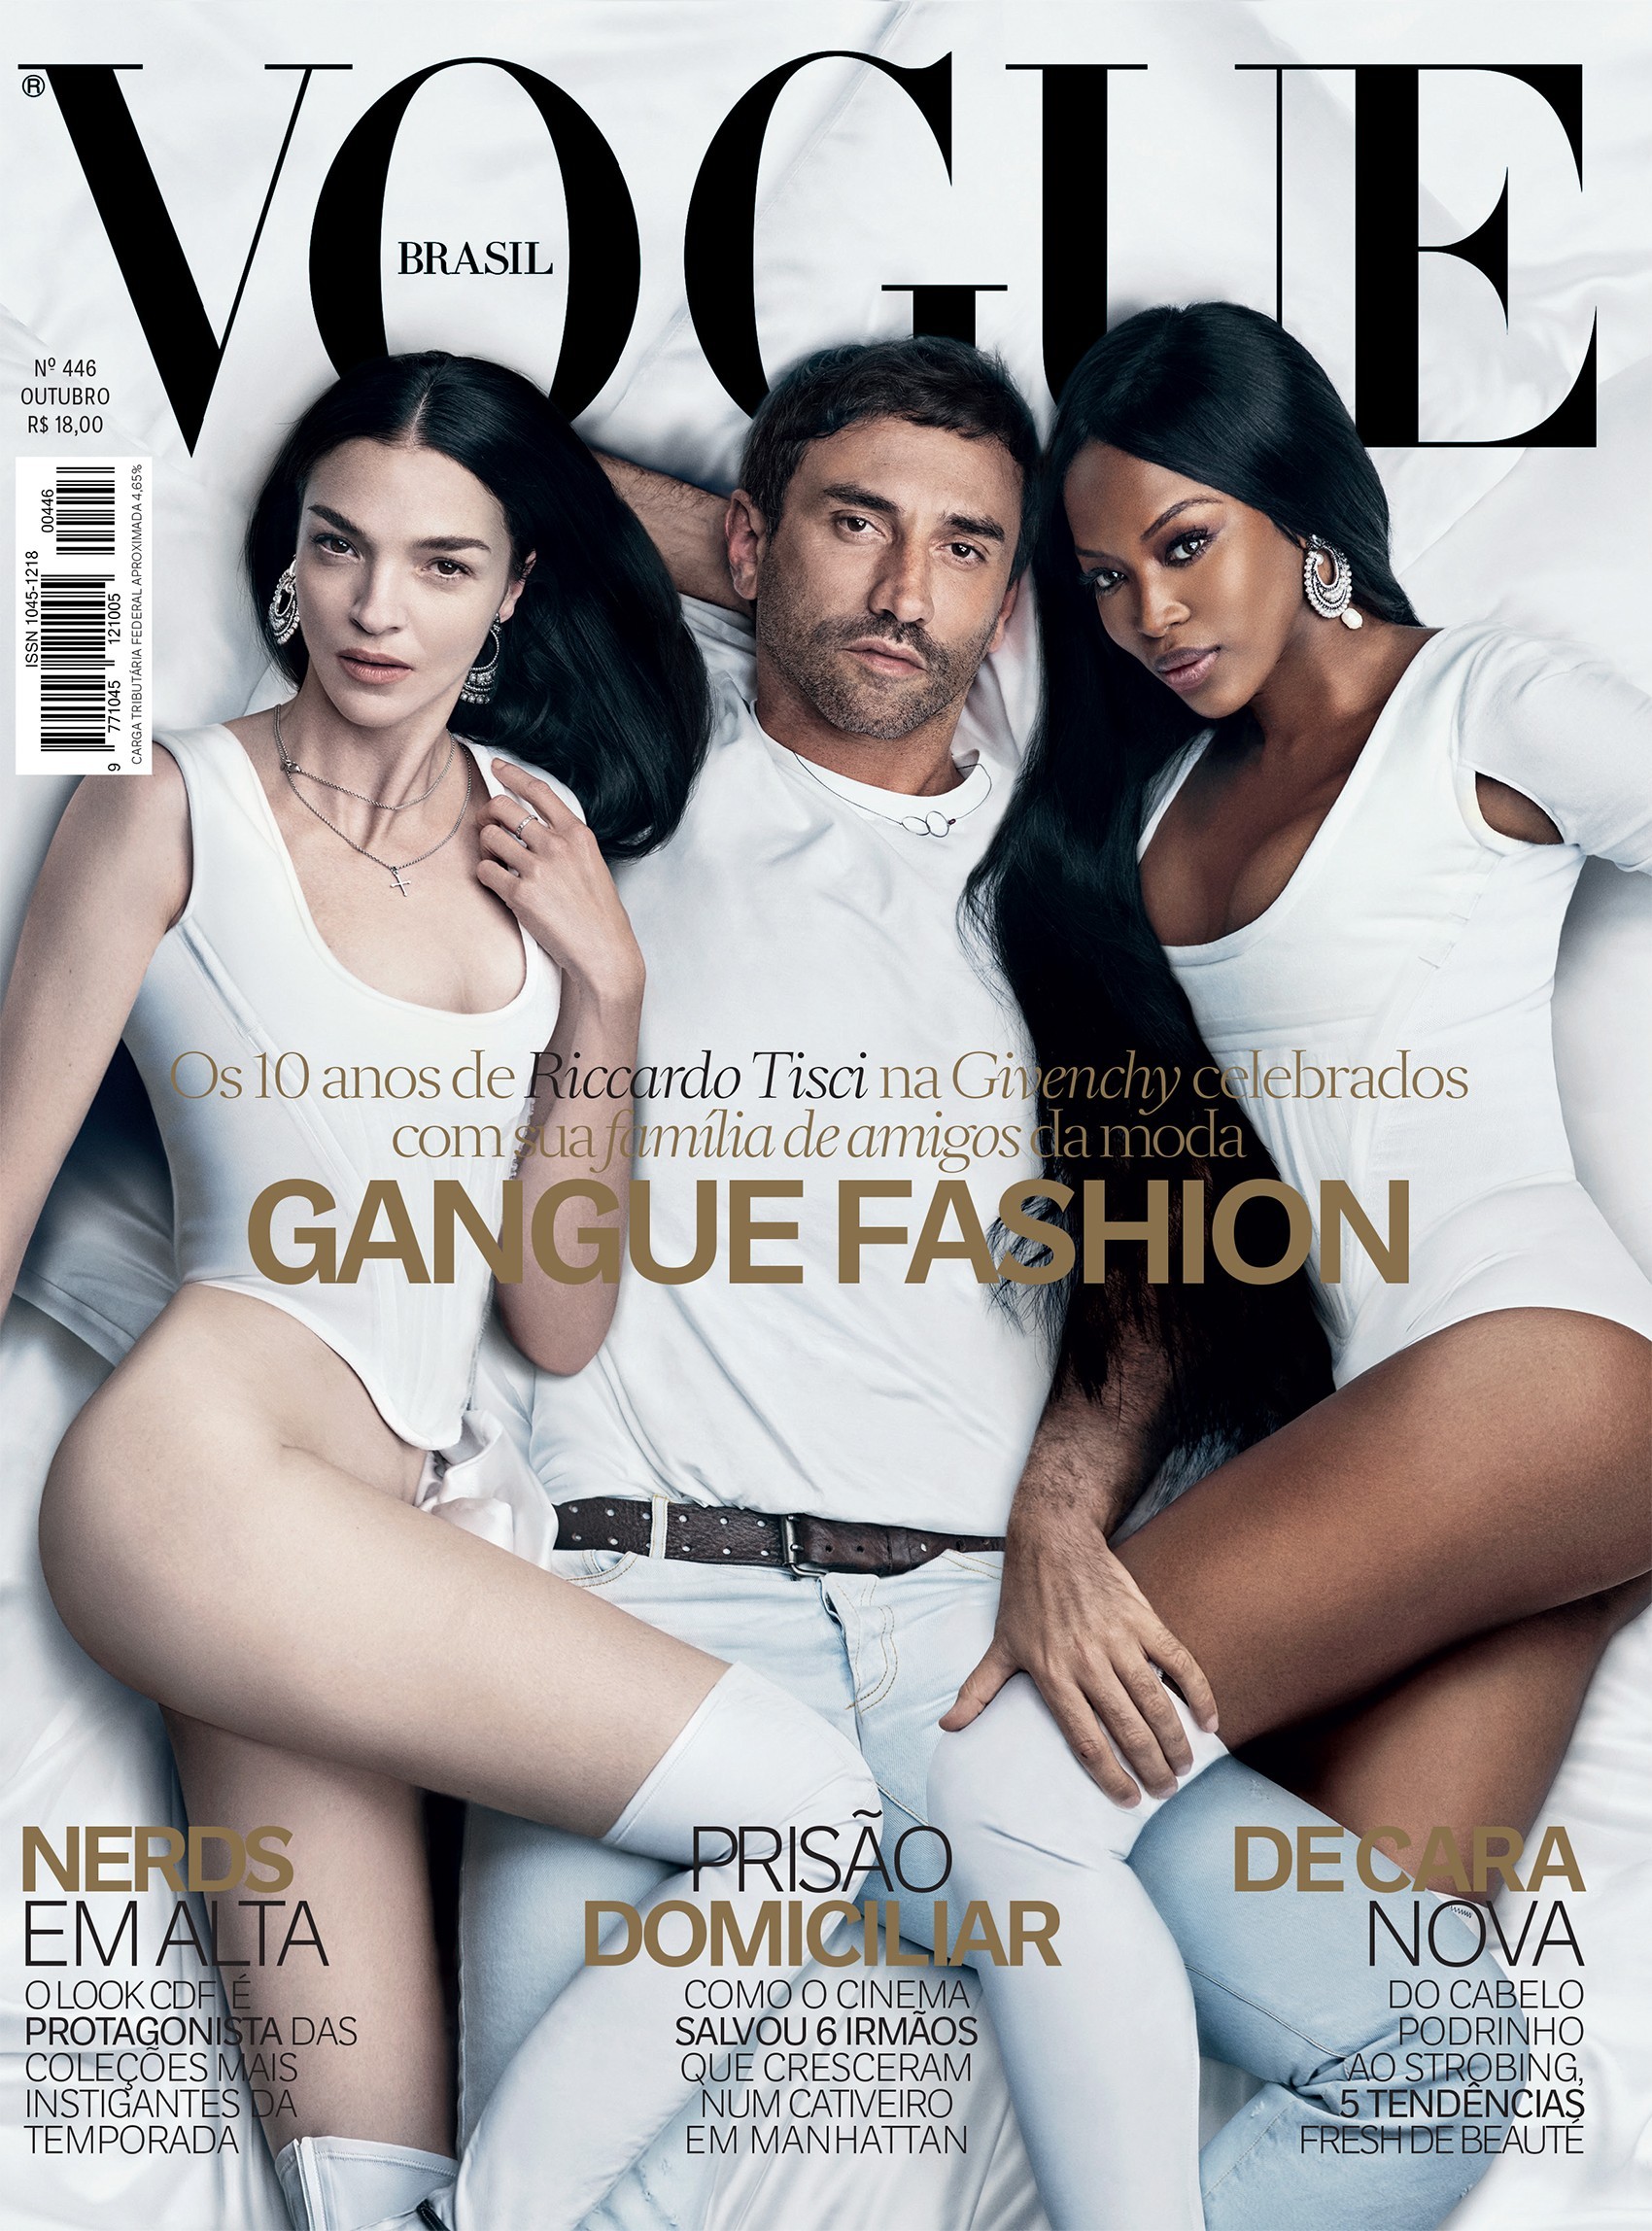 Riccardo Tisci na capa da Vogue de outubro de 2015 (Foto: Arquivo Vogue)